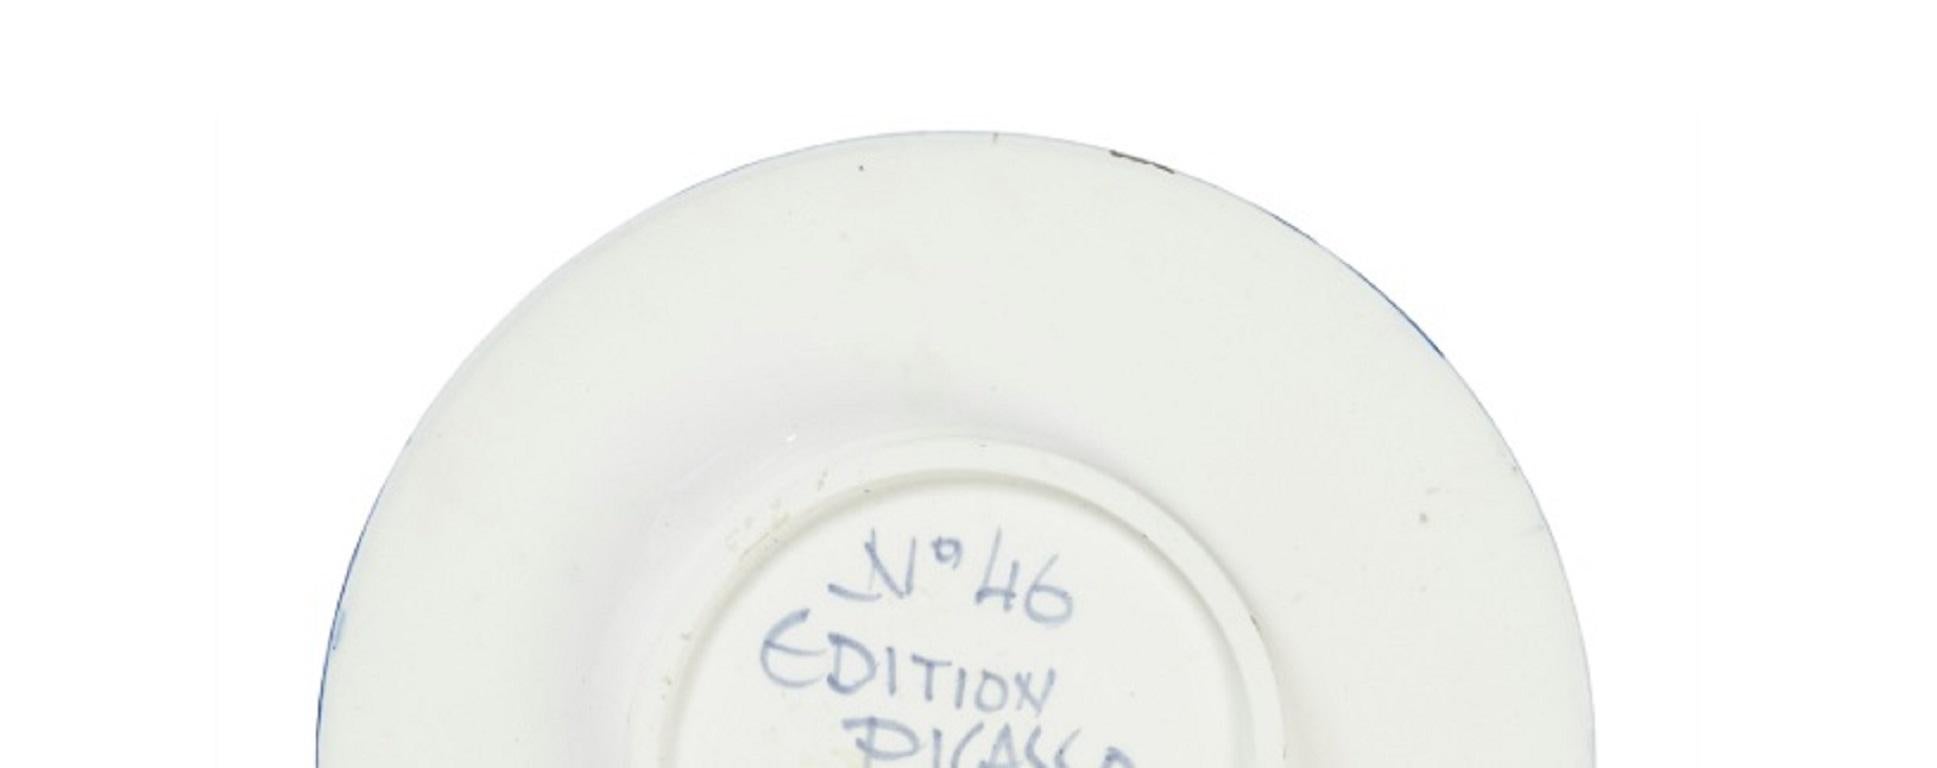 Pablo Picasso Madoura Ceramic Plate- Visage no. 46. Ramié 466 1